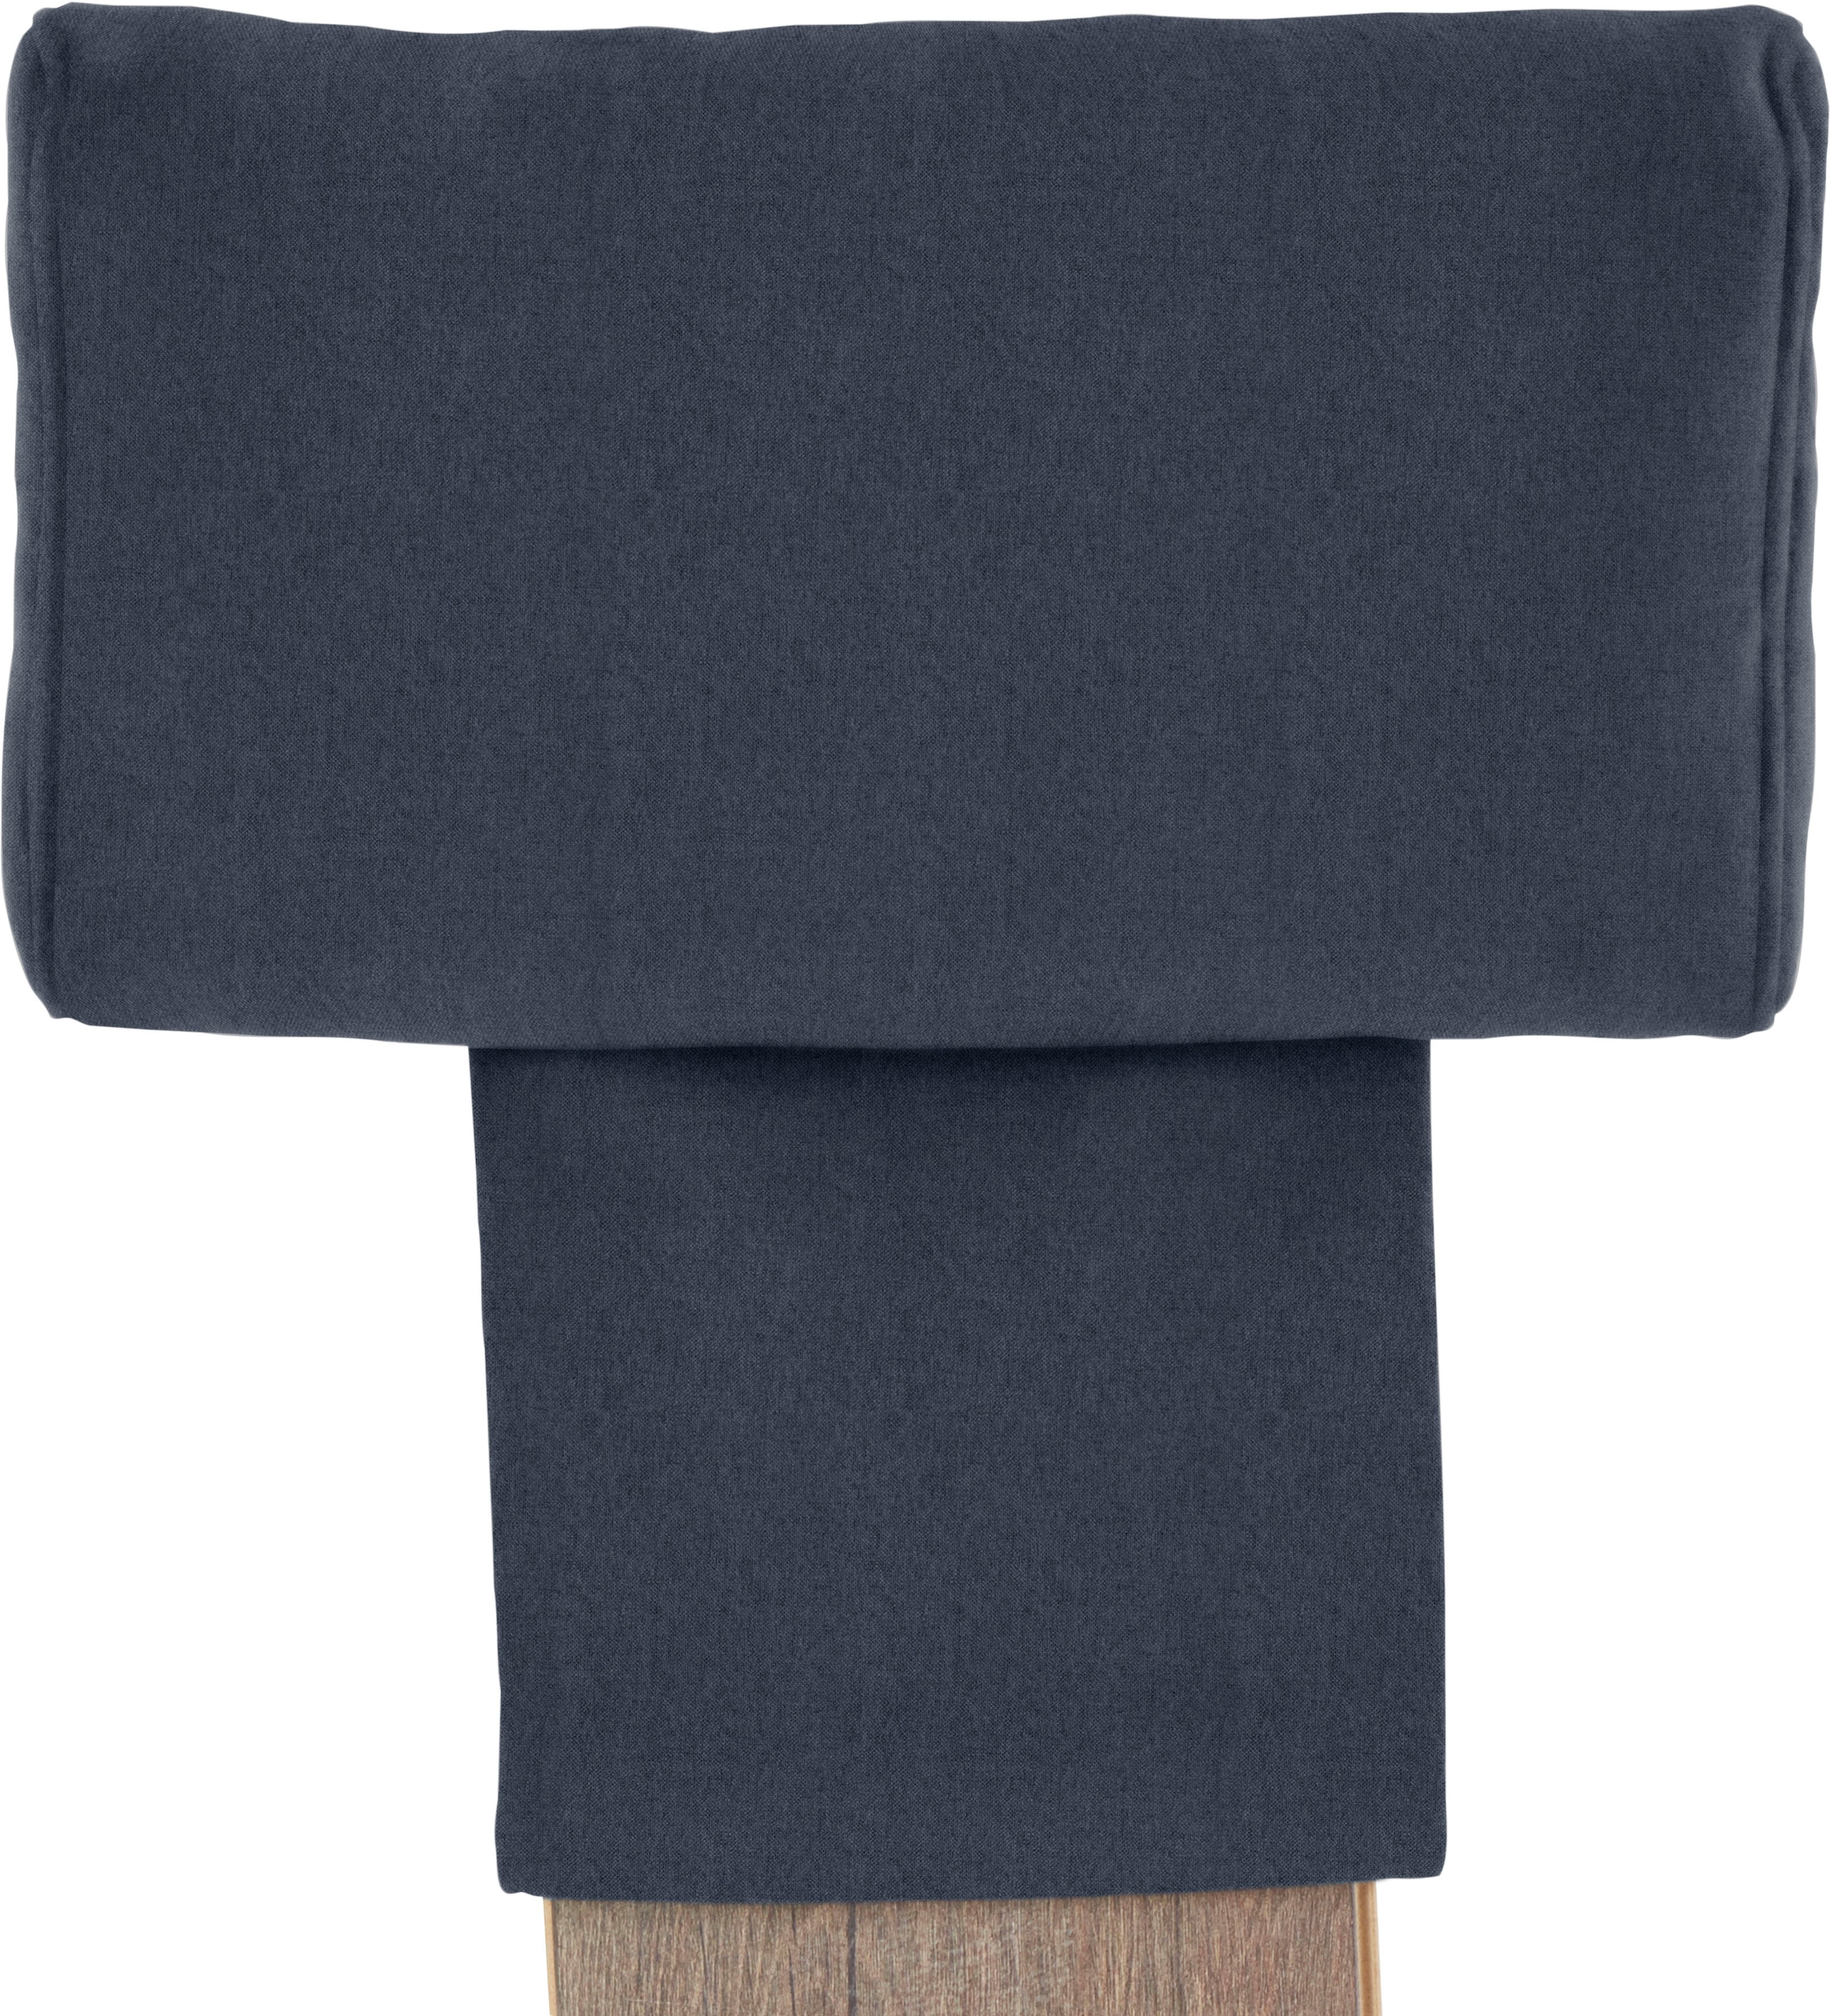 DOMO collection Kopfstütze »Kea einfach über die Rückenlehne zu legen«, in vielen Farben erhältlich